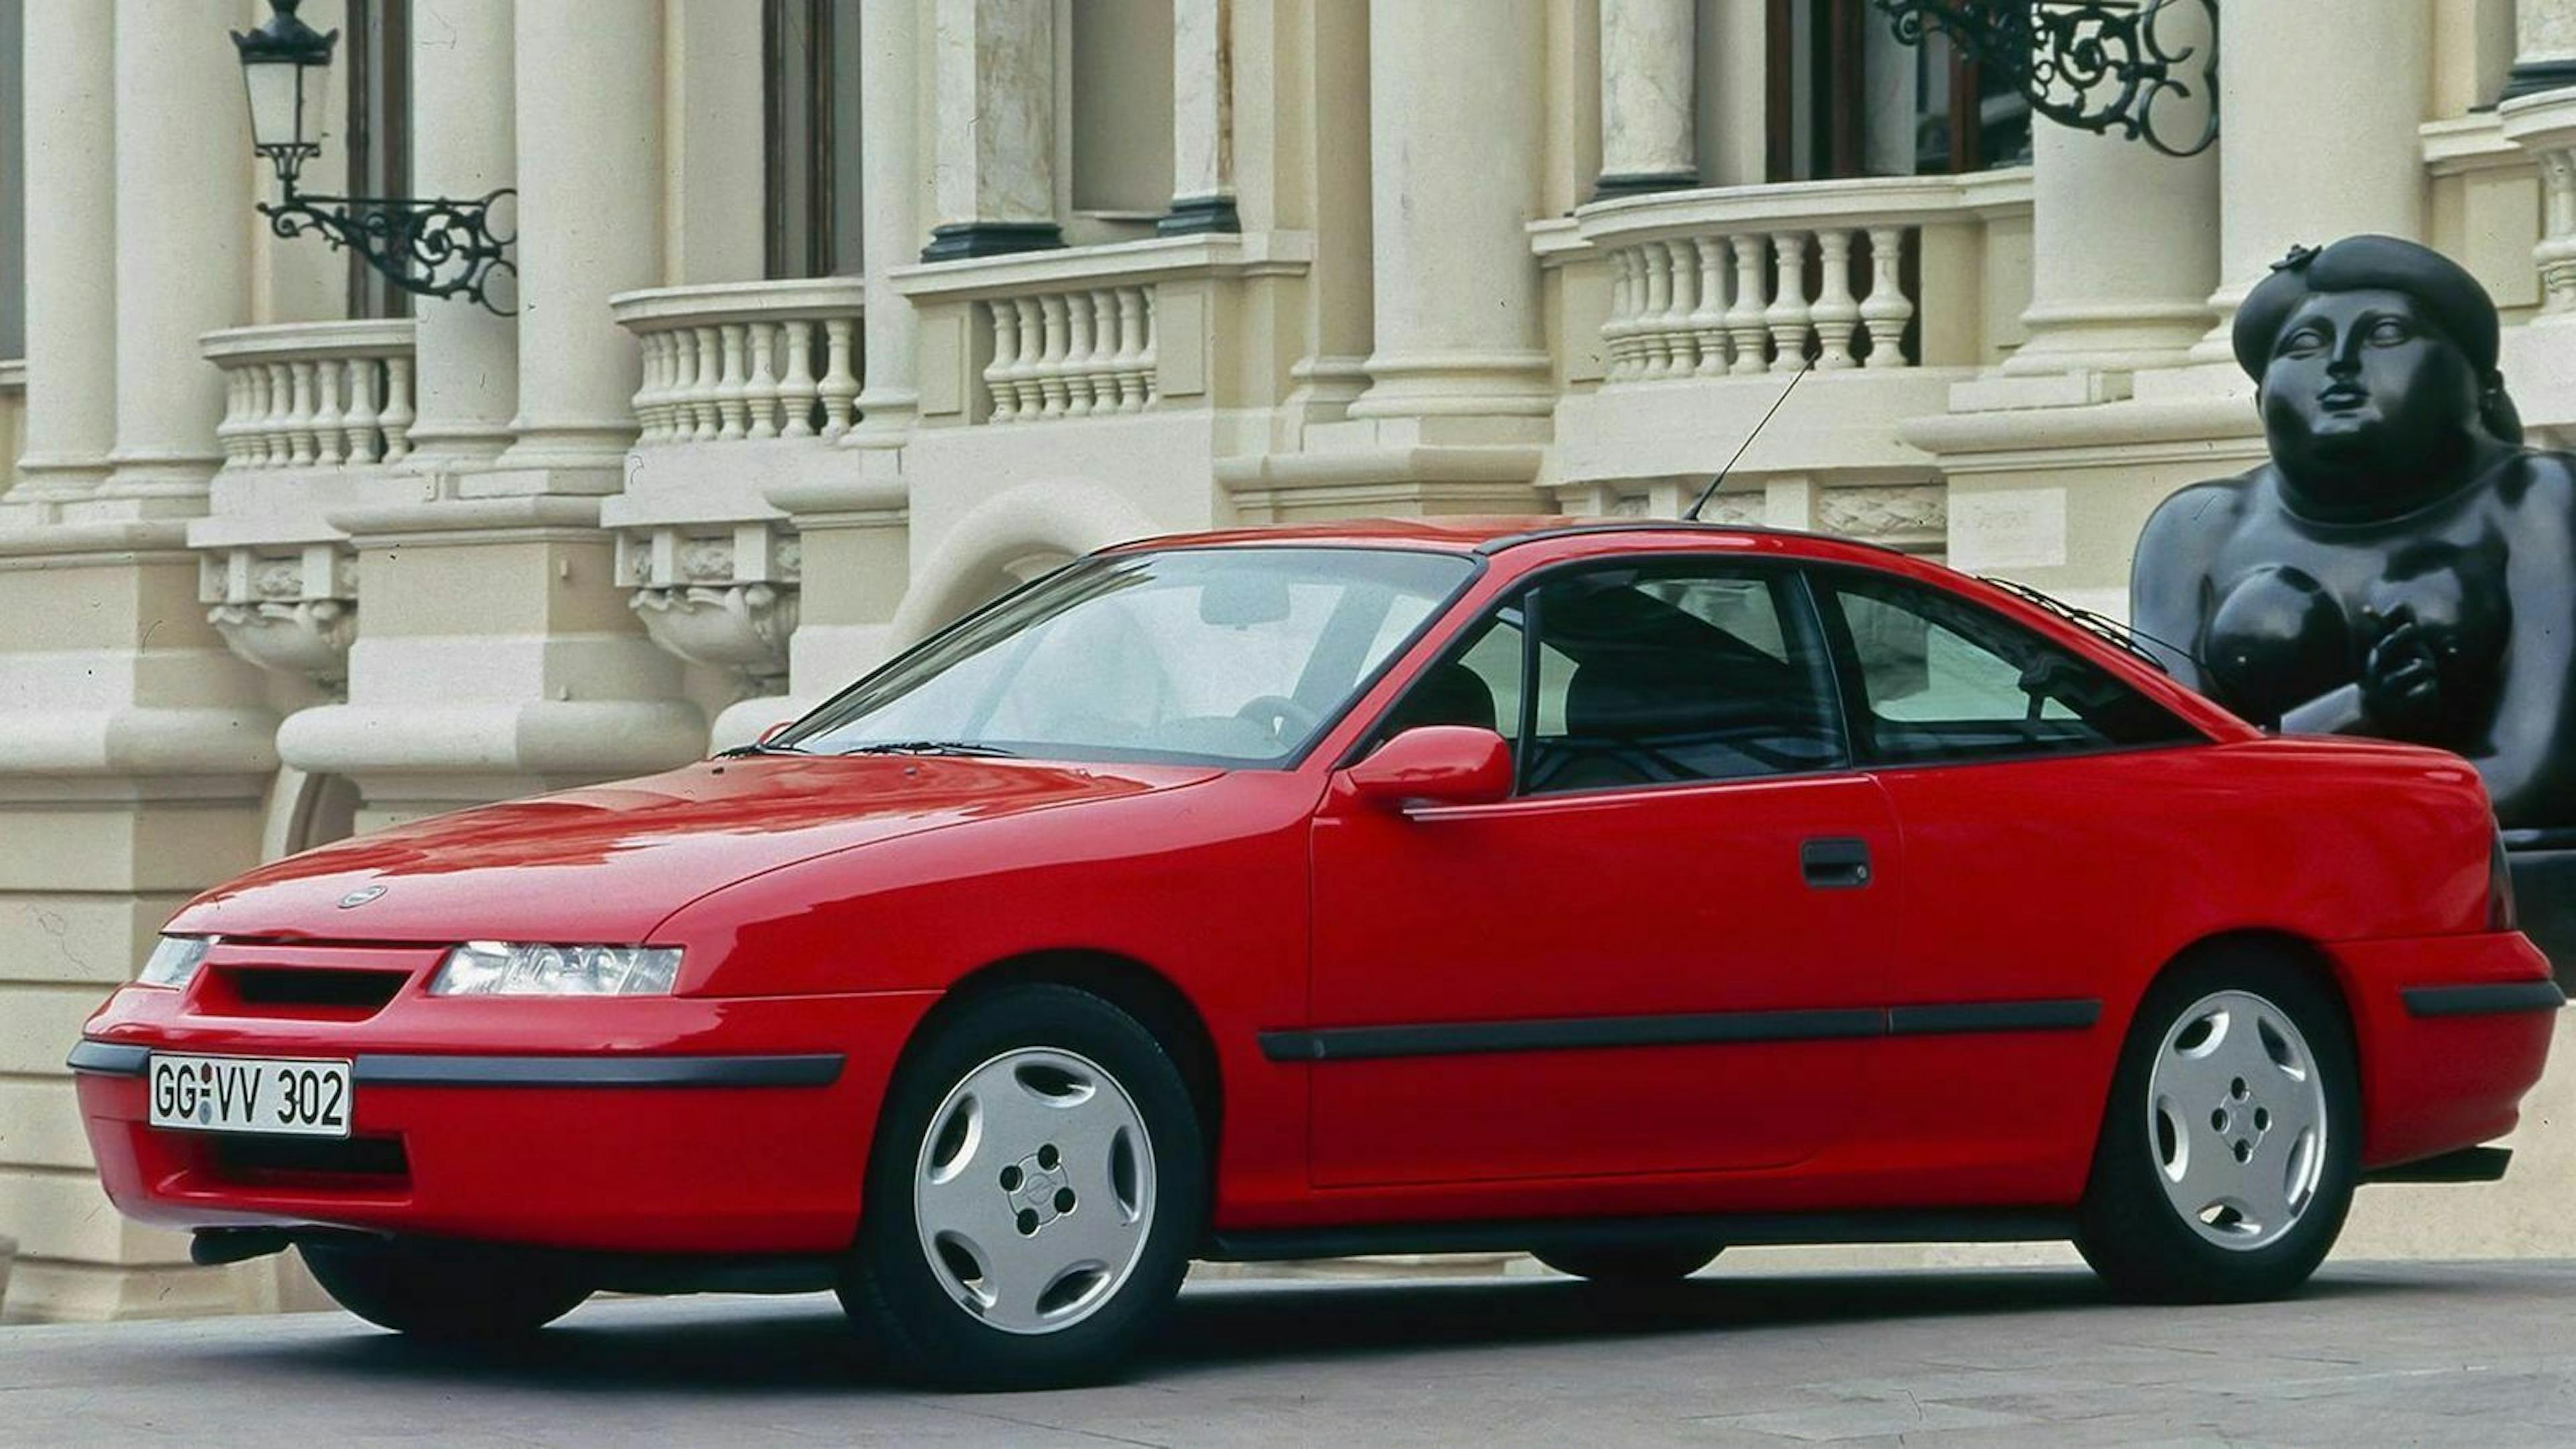 Ein roter Opel Calibra Turbo Oldtimer steht vor einem beigefarbenen Gebäude.